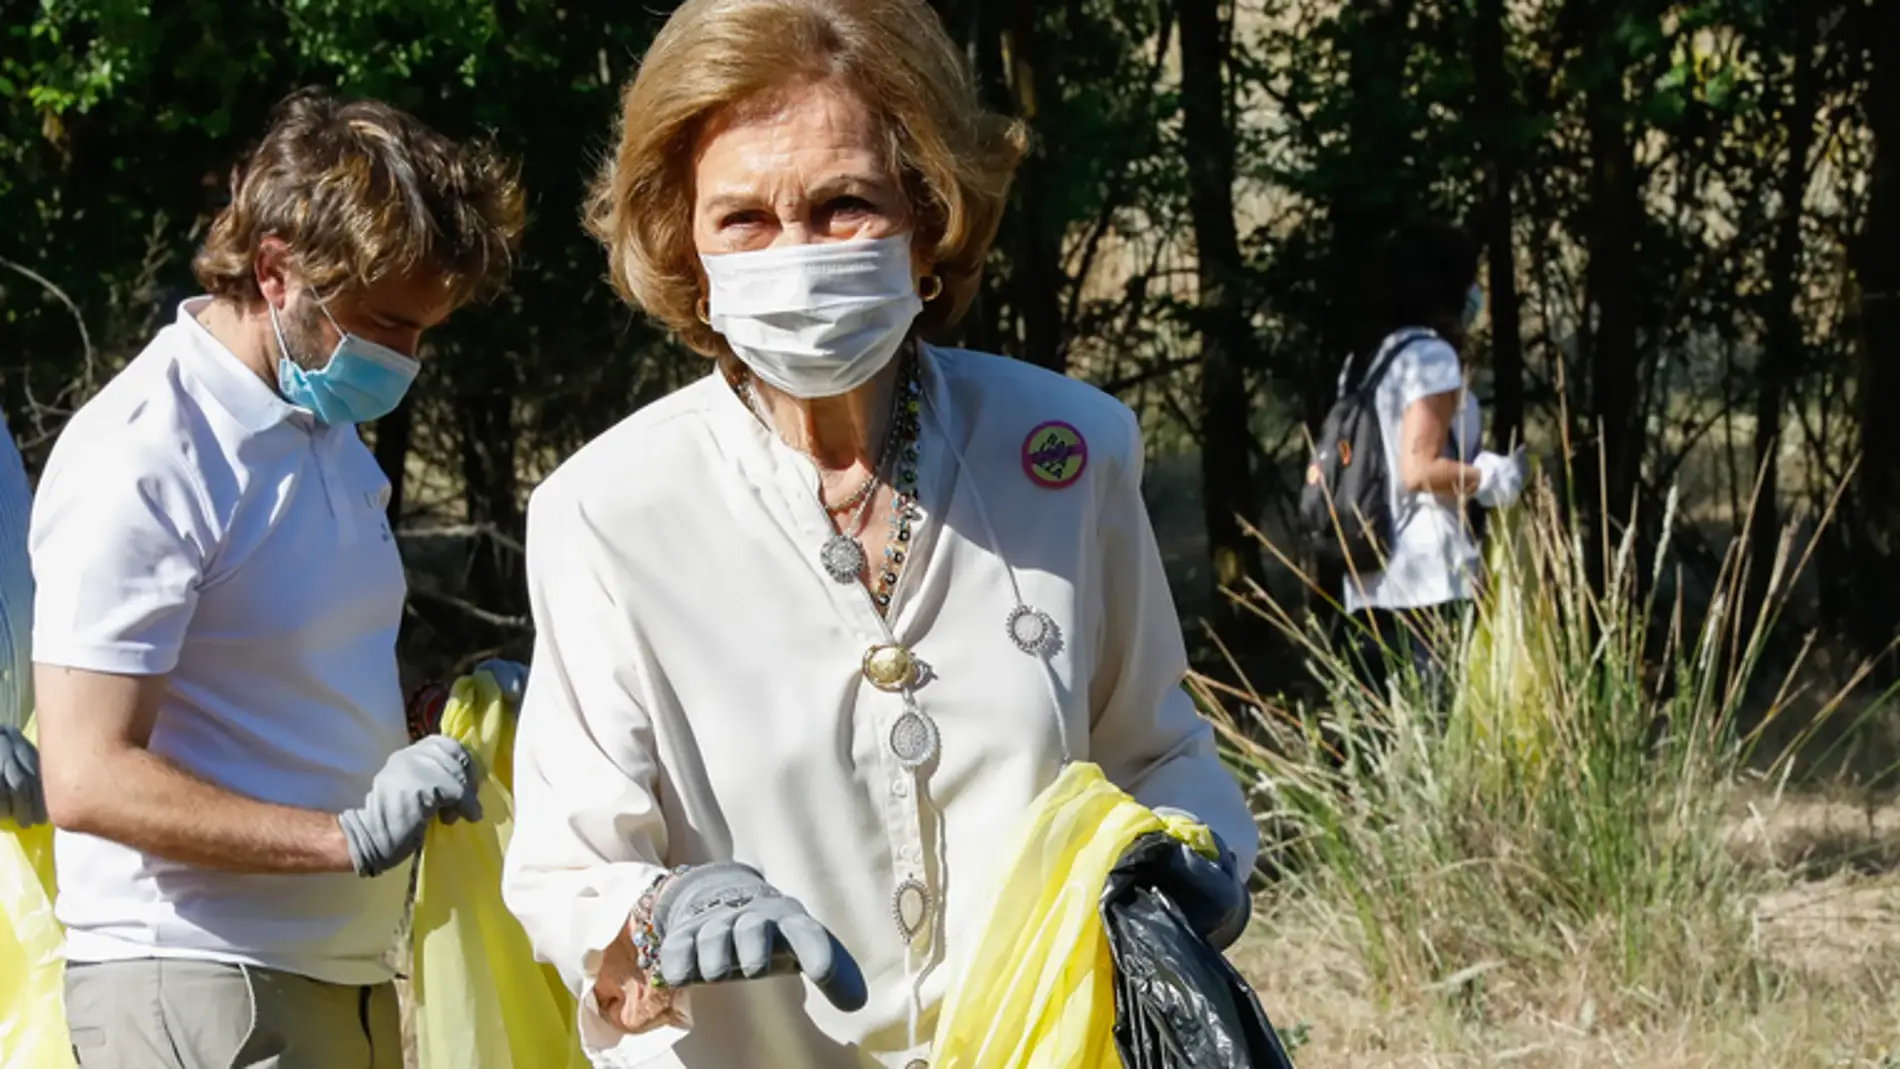 La Reina Doña Sofía recogerá basura en la playa de La Caleta del Estacio, cercana al Mar Menor